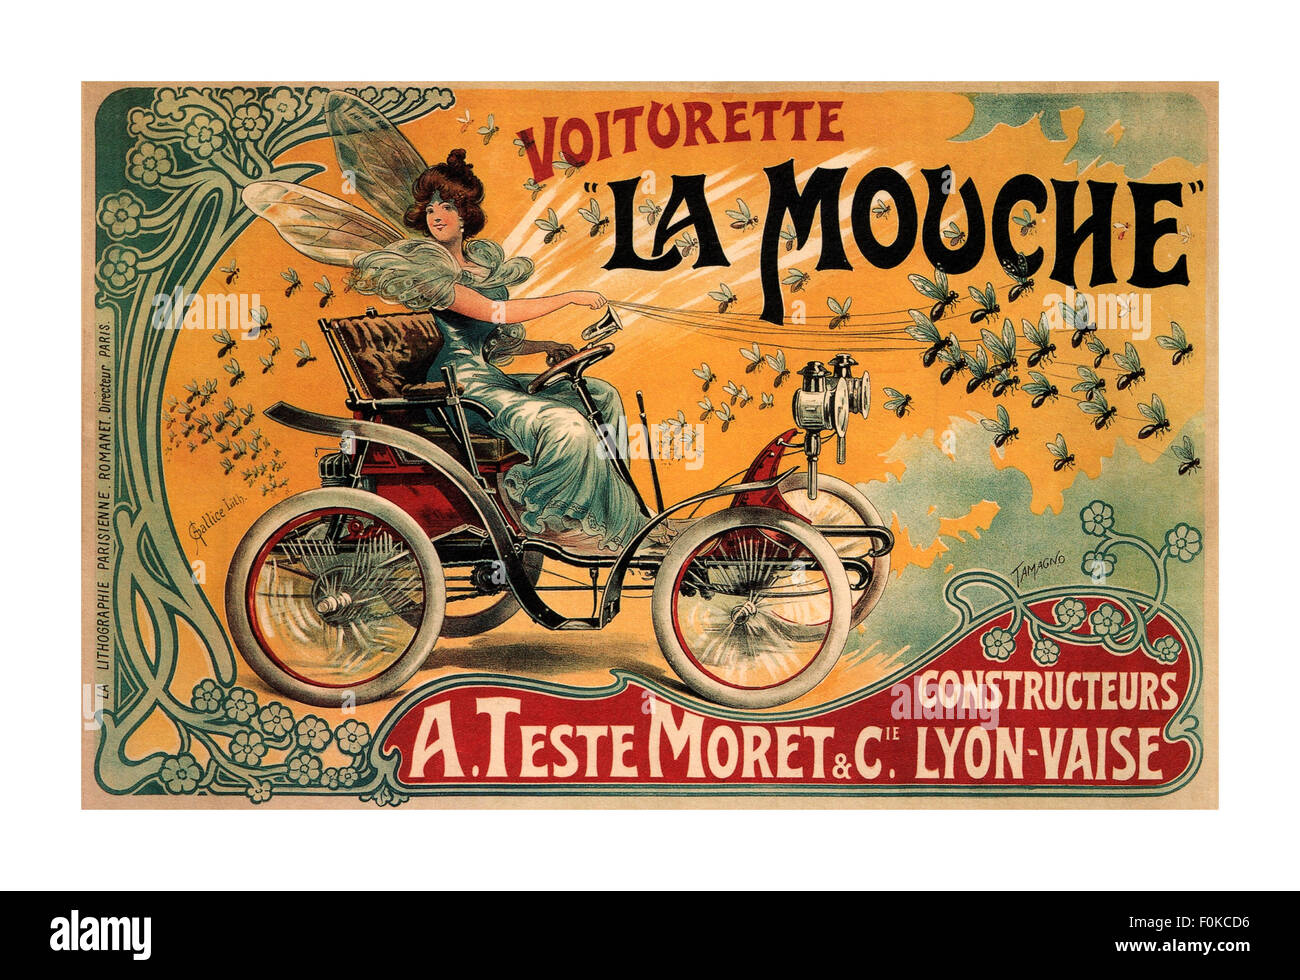 LA MOUCHE VOITURETTE 1900 art deco style The French car company, A. Teste Moret & Cie, promoted its Voiturette La Mouche Lyon Vaise France Stock Photo